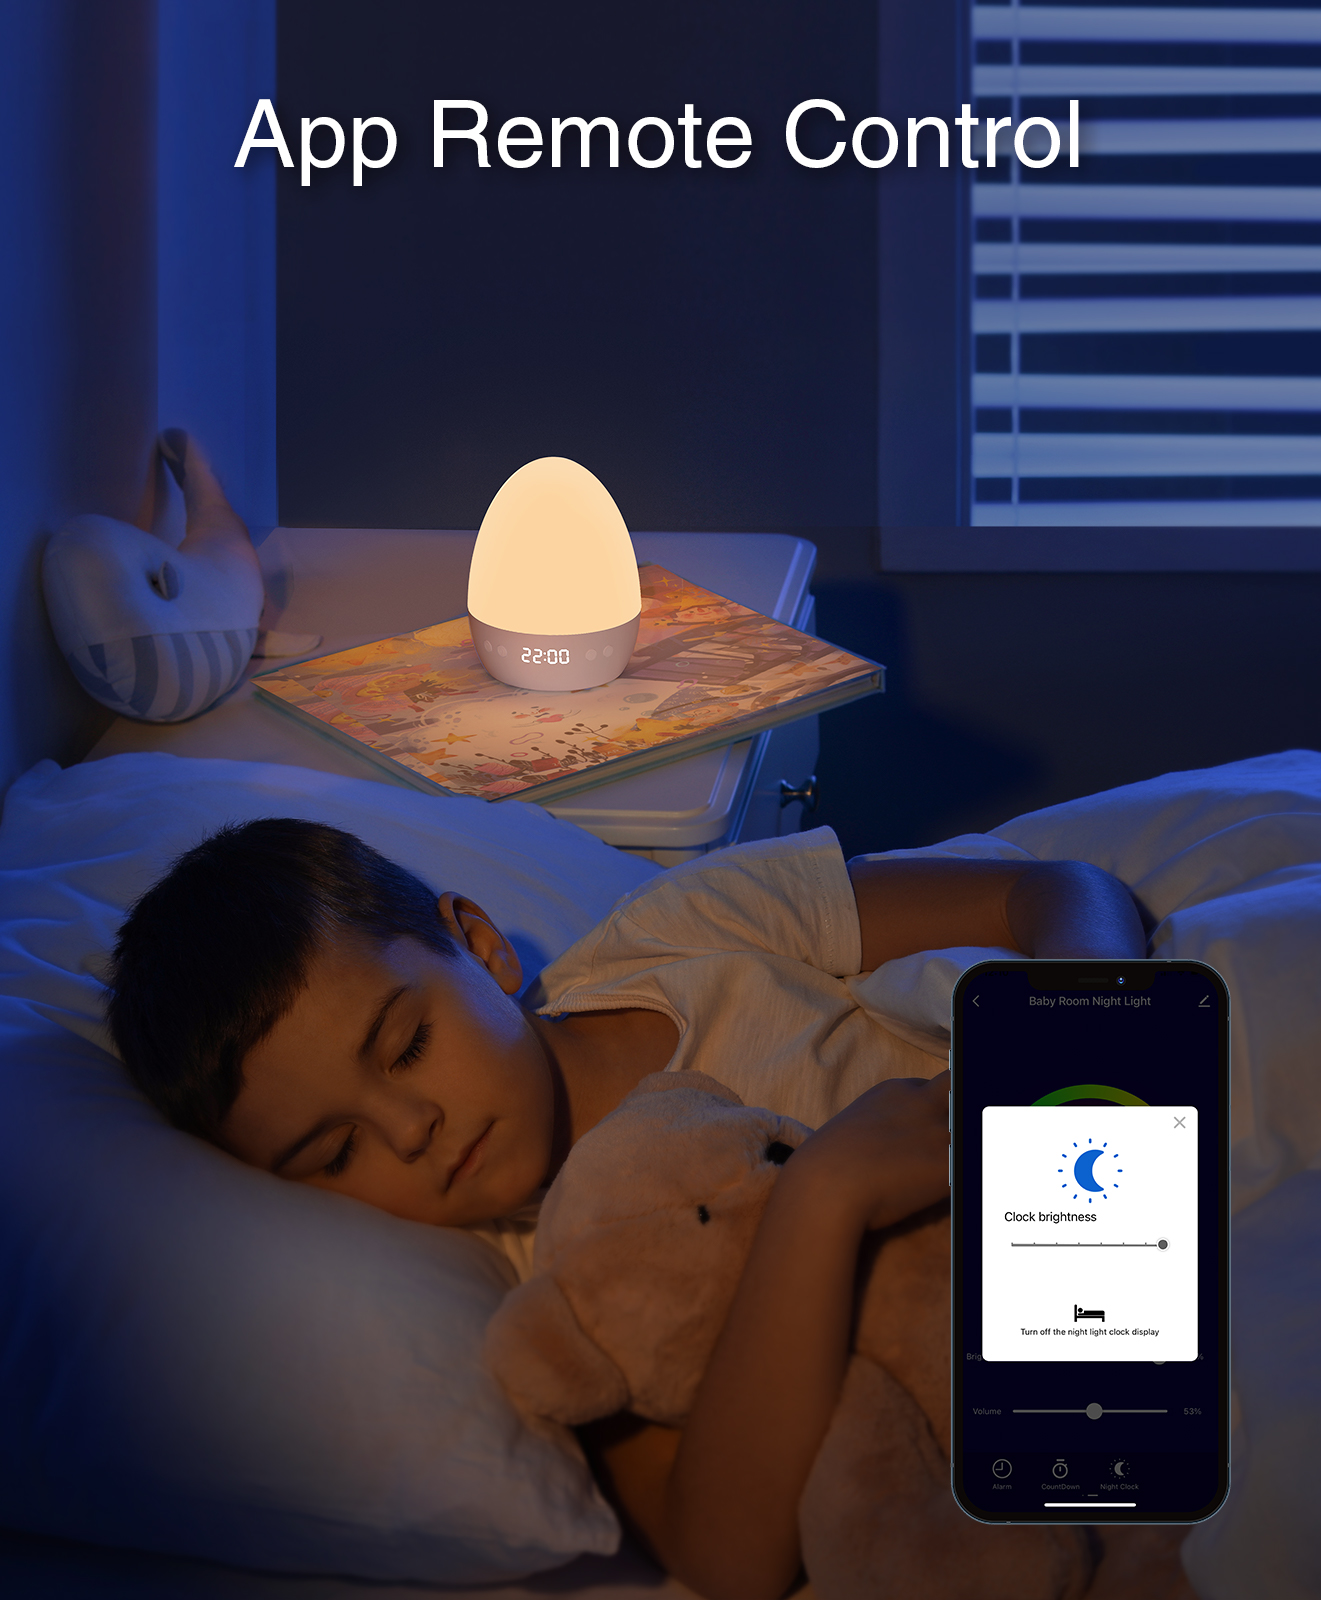 Gosund LB2 baby nachtlampje, 5V, 2A USB (inc voeding en kabel) touch bediening: kleuren en lichtsterkte, met klokje en muziek - Tuya Platform, Alexa and Google Home compatible